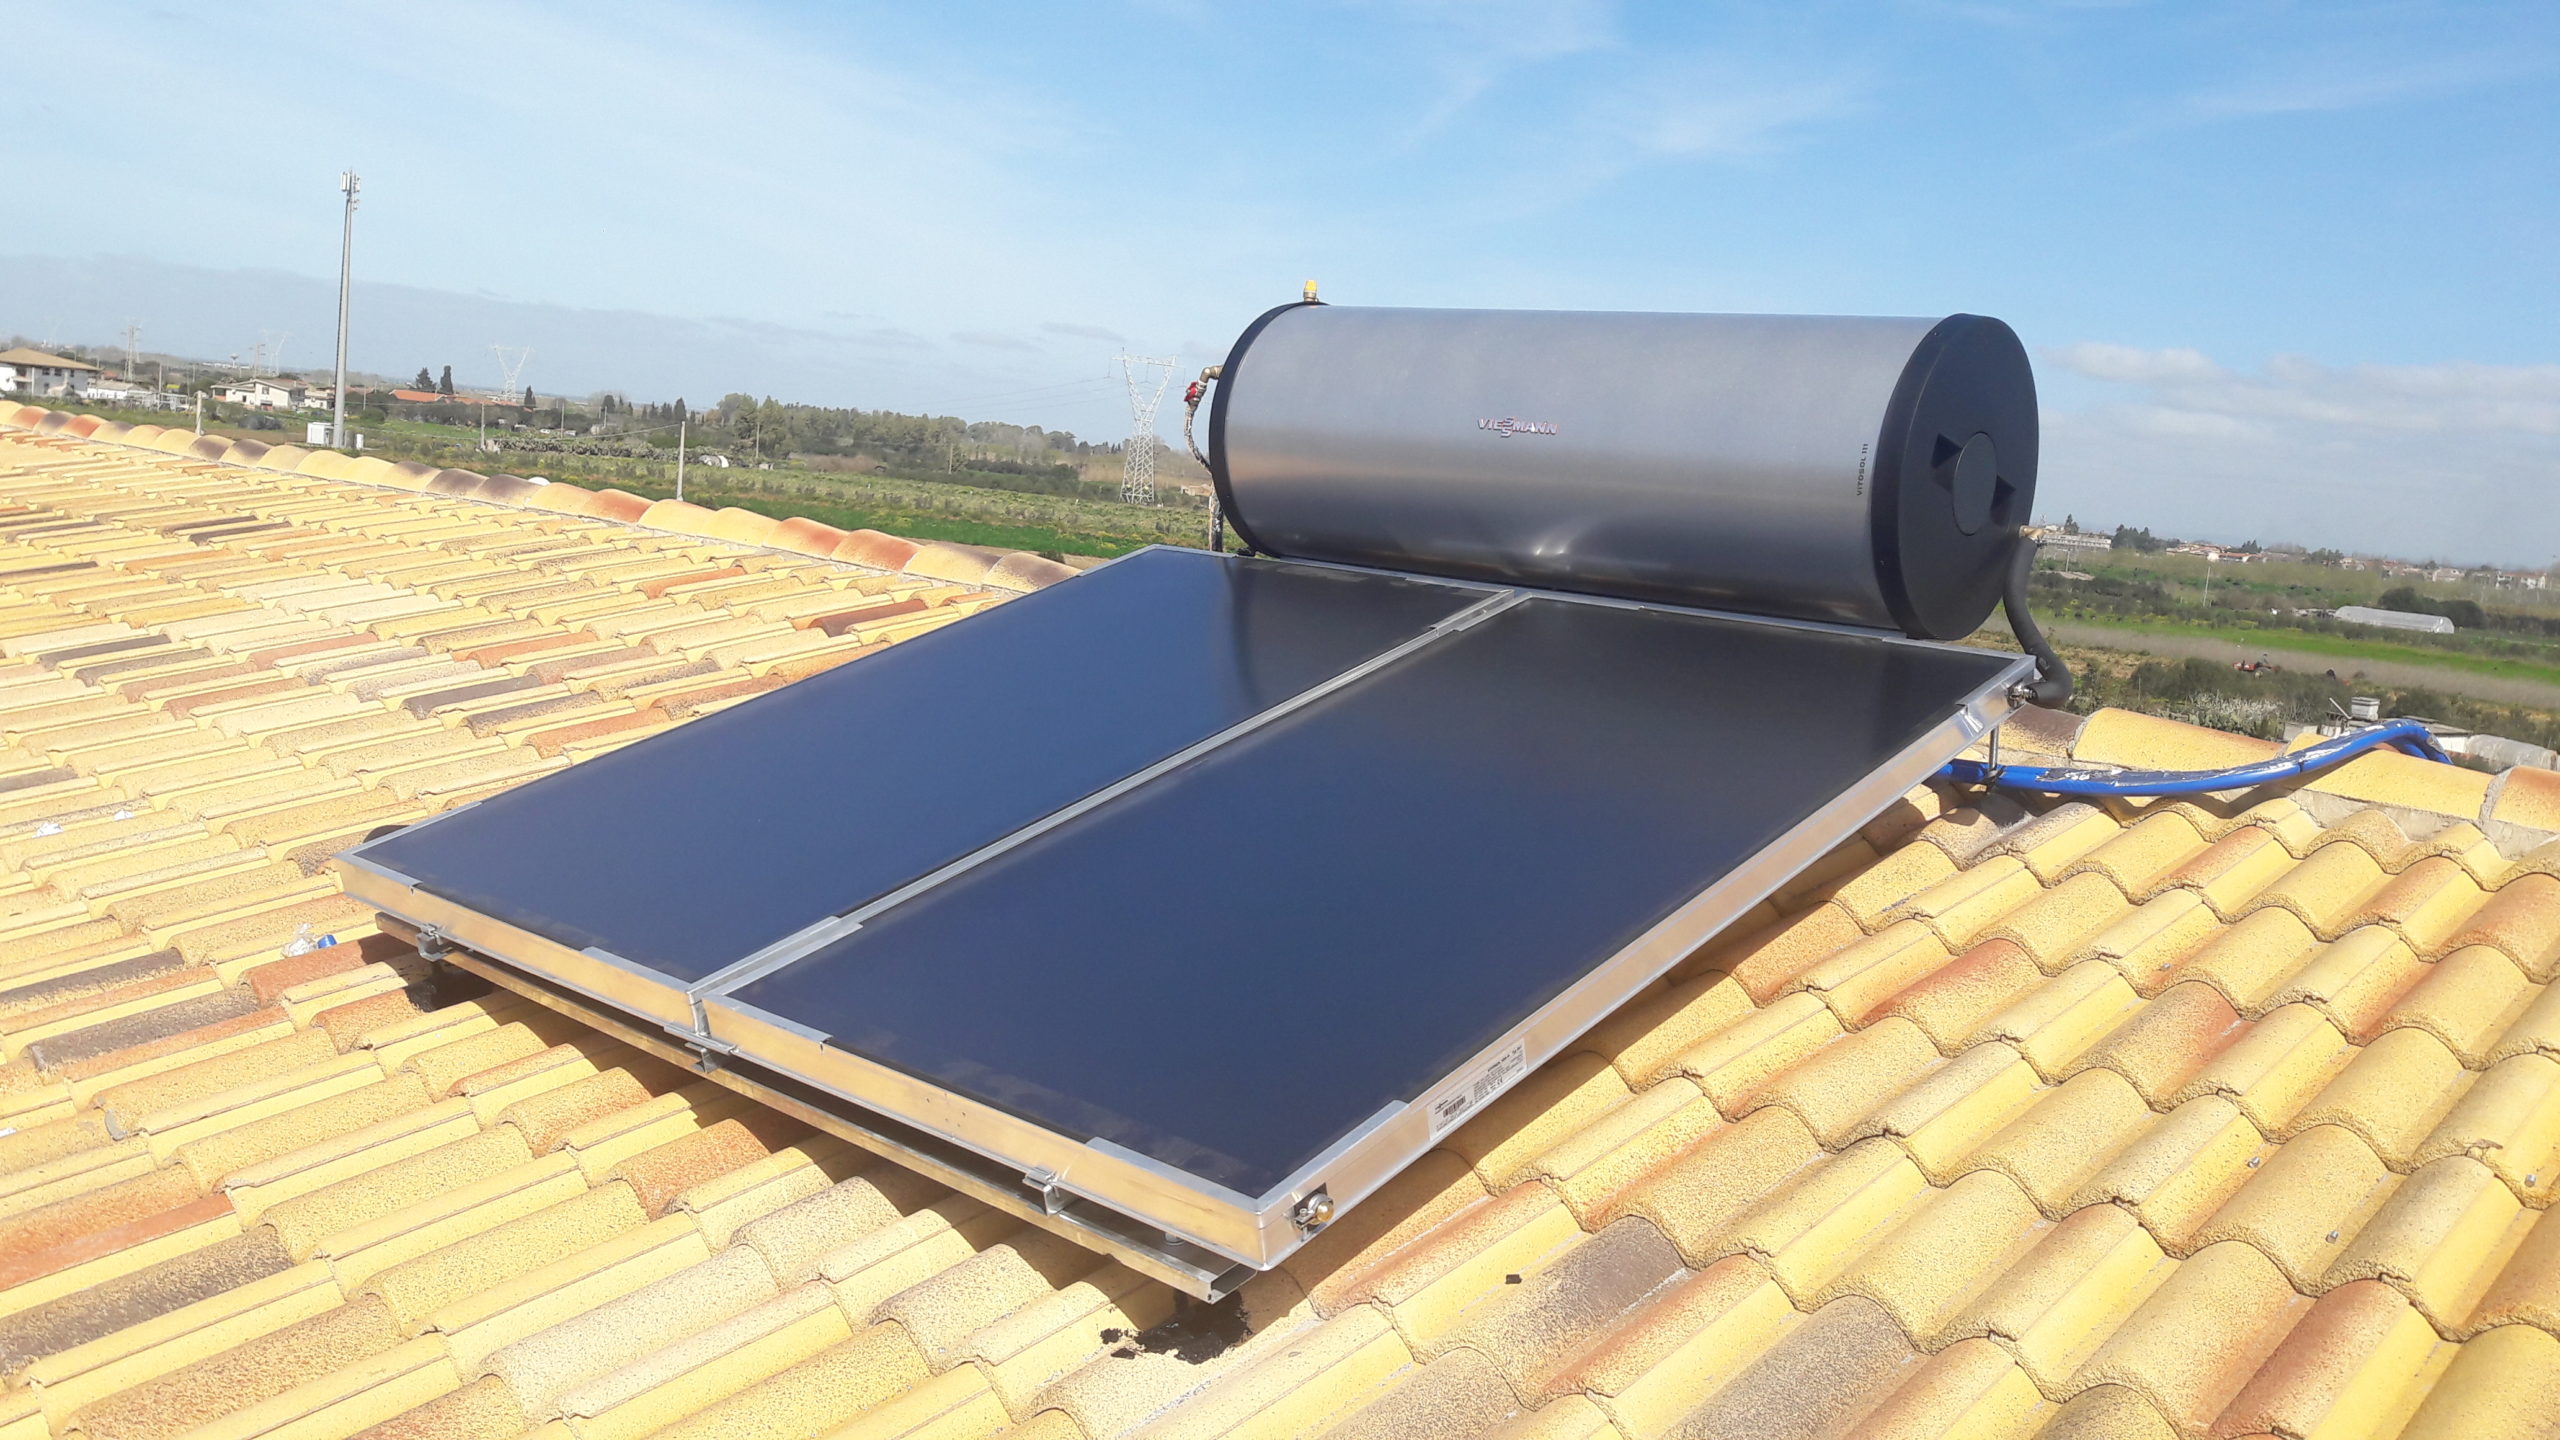 Impianto Fotovoltaico Pannelli Solari e Fotovoltaici Solare Termodinamico e Stufa  a Pellet - Solare Impianti - Fotovoltaico Solare Termico Termodinamico  Caldaia e Stufa a Pellet preventivo gratuito in tutta la Sardegna siamo